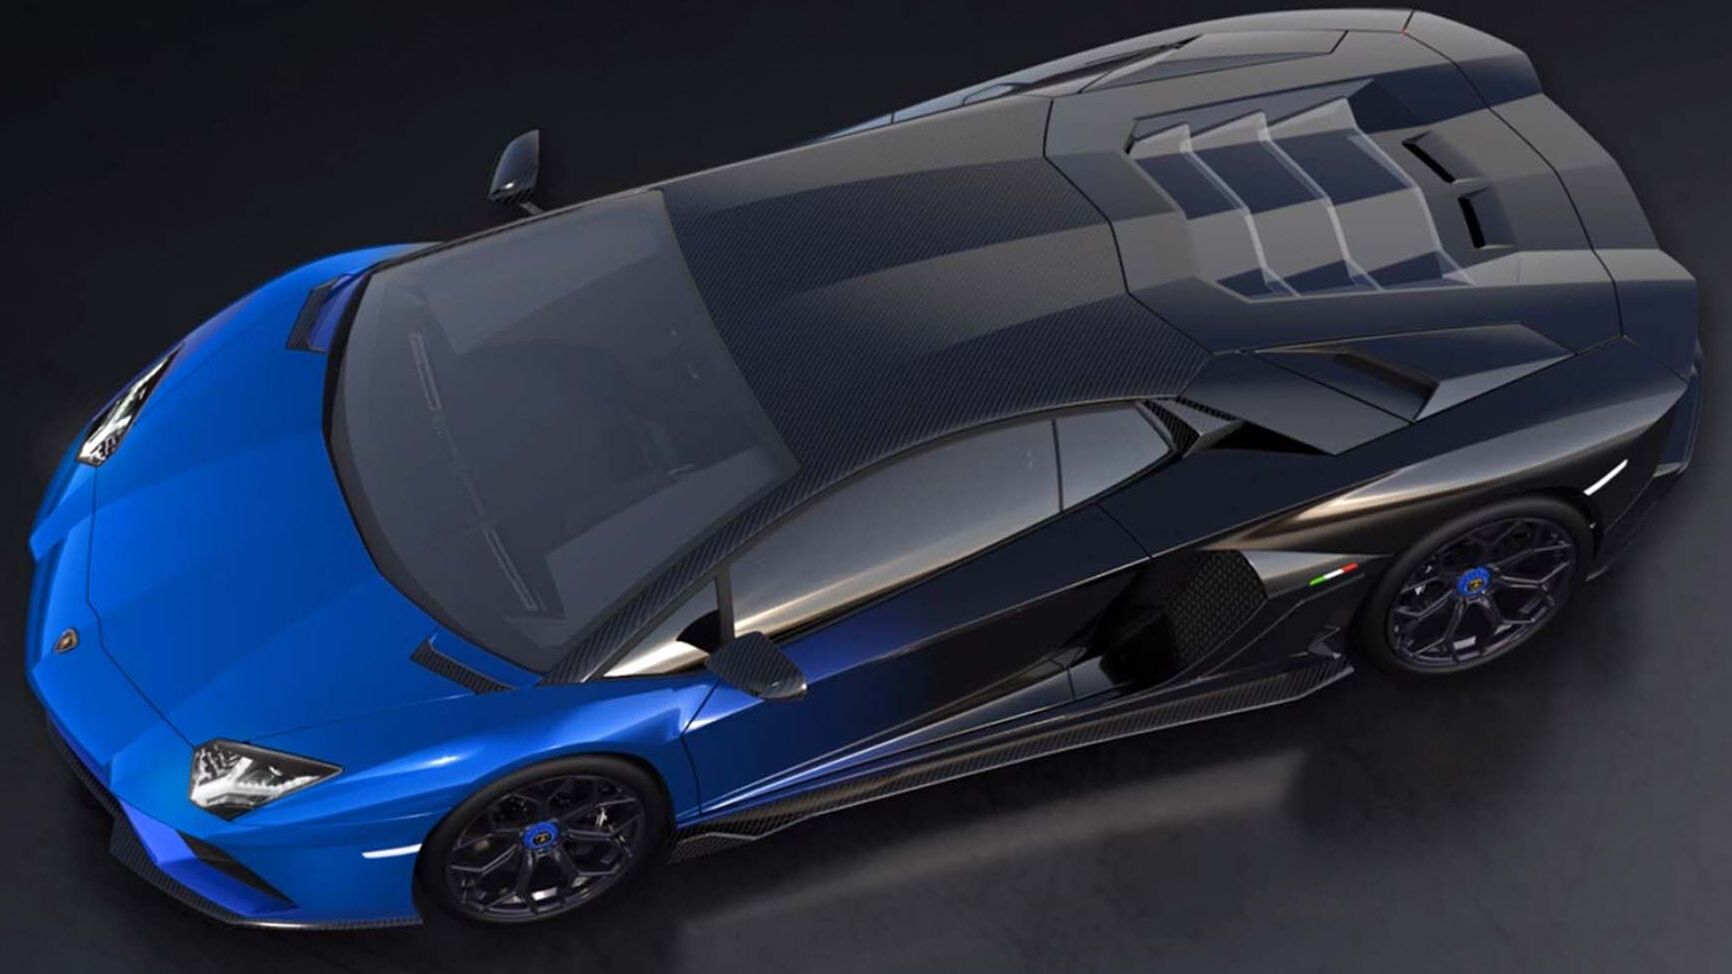 Lamborghini Aventador LP 780-4 Ultimae Coupé exclusivo será emparelhado com um NFT 1.1 e será leiloado